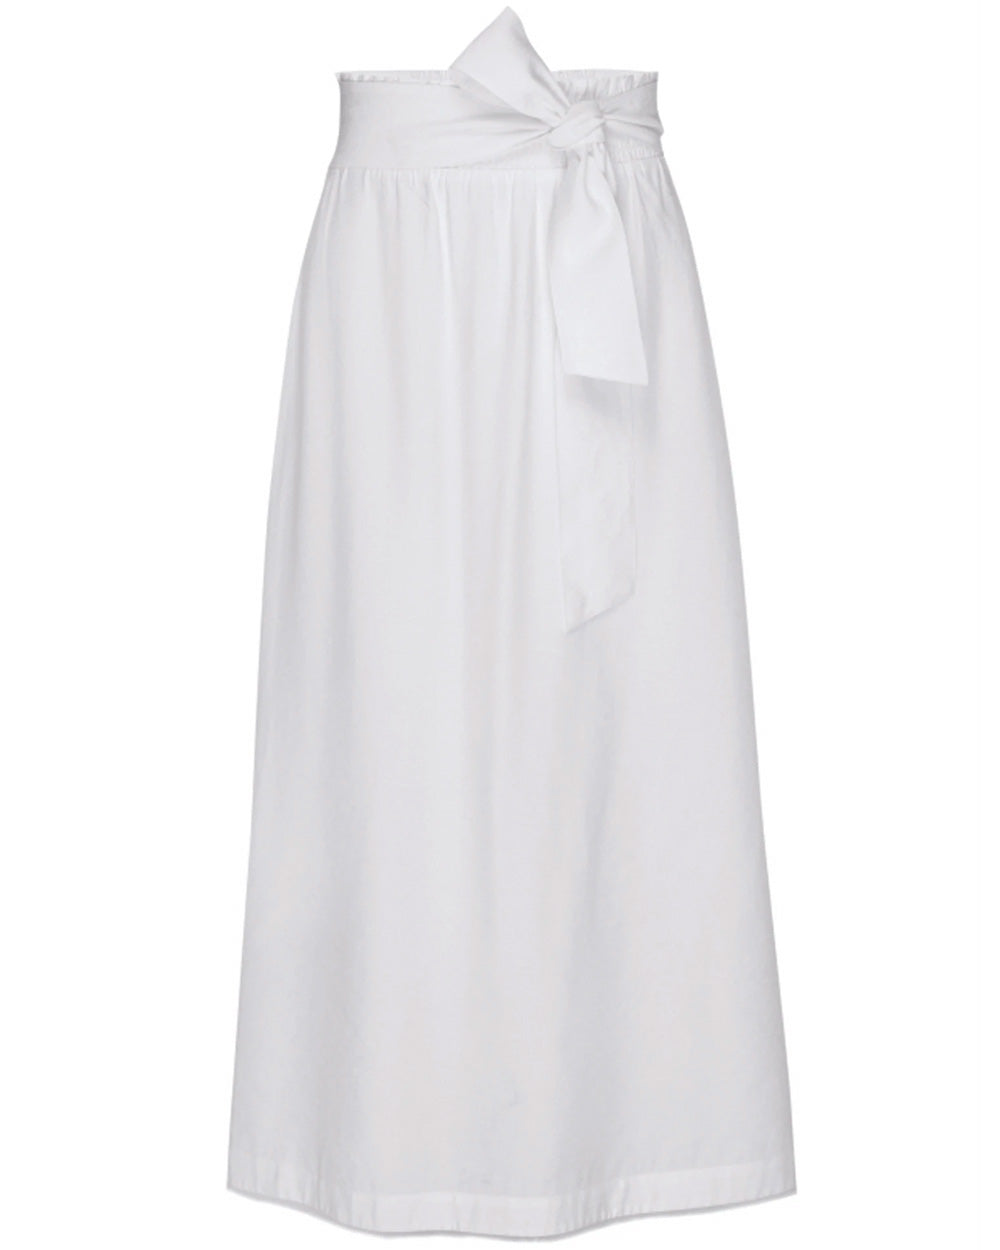 Salt White Summer Smocked Skirt